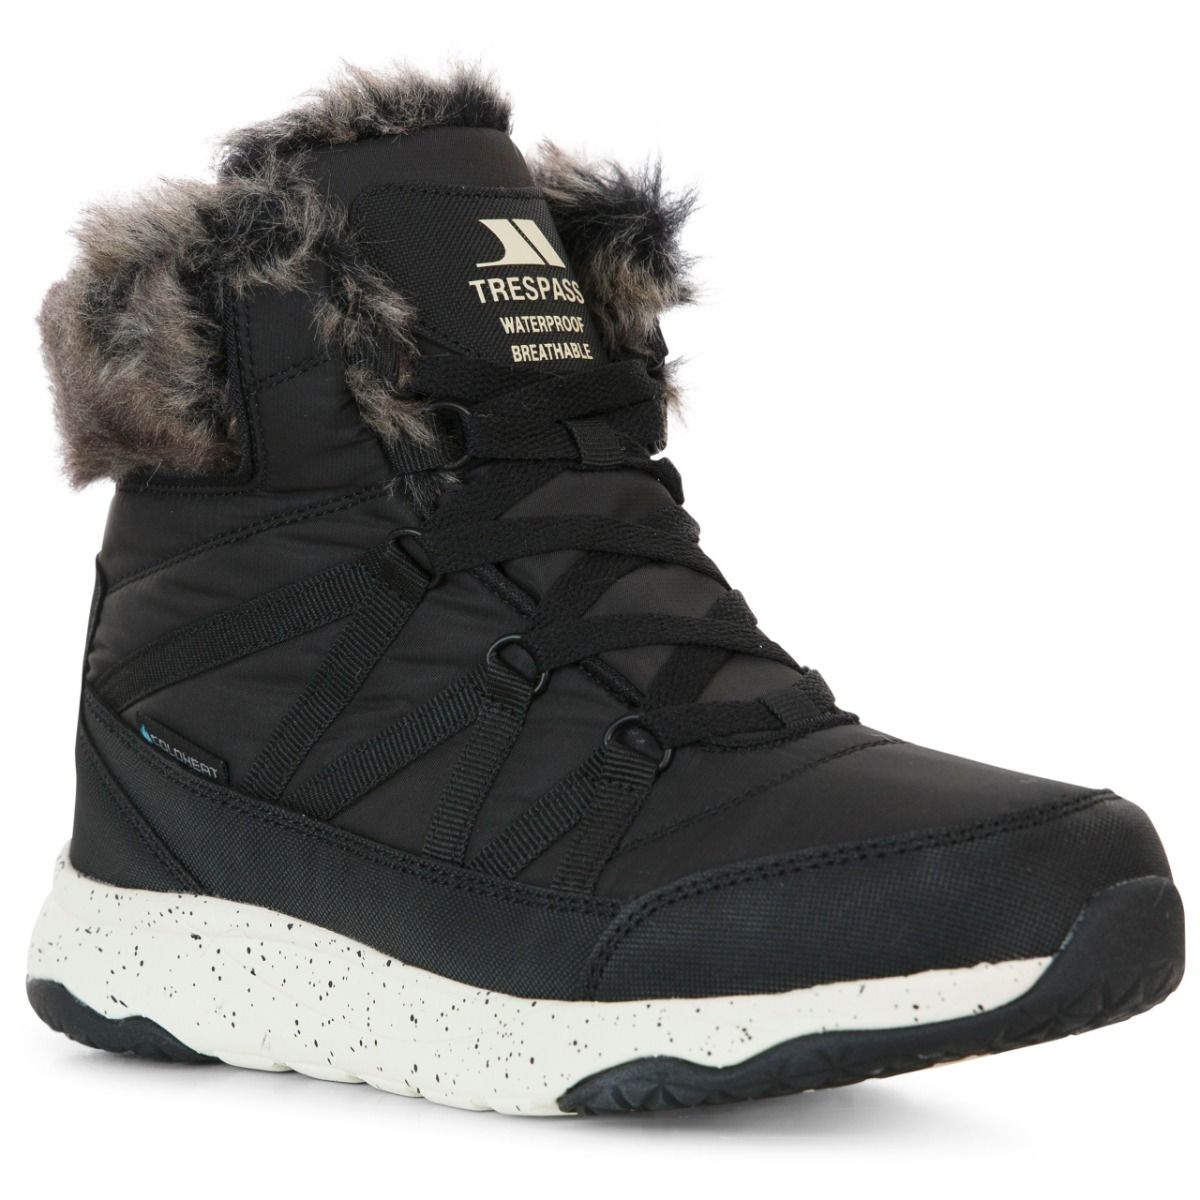 Trespass Womens Winter Boots Waterproof Insulated Kenna